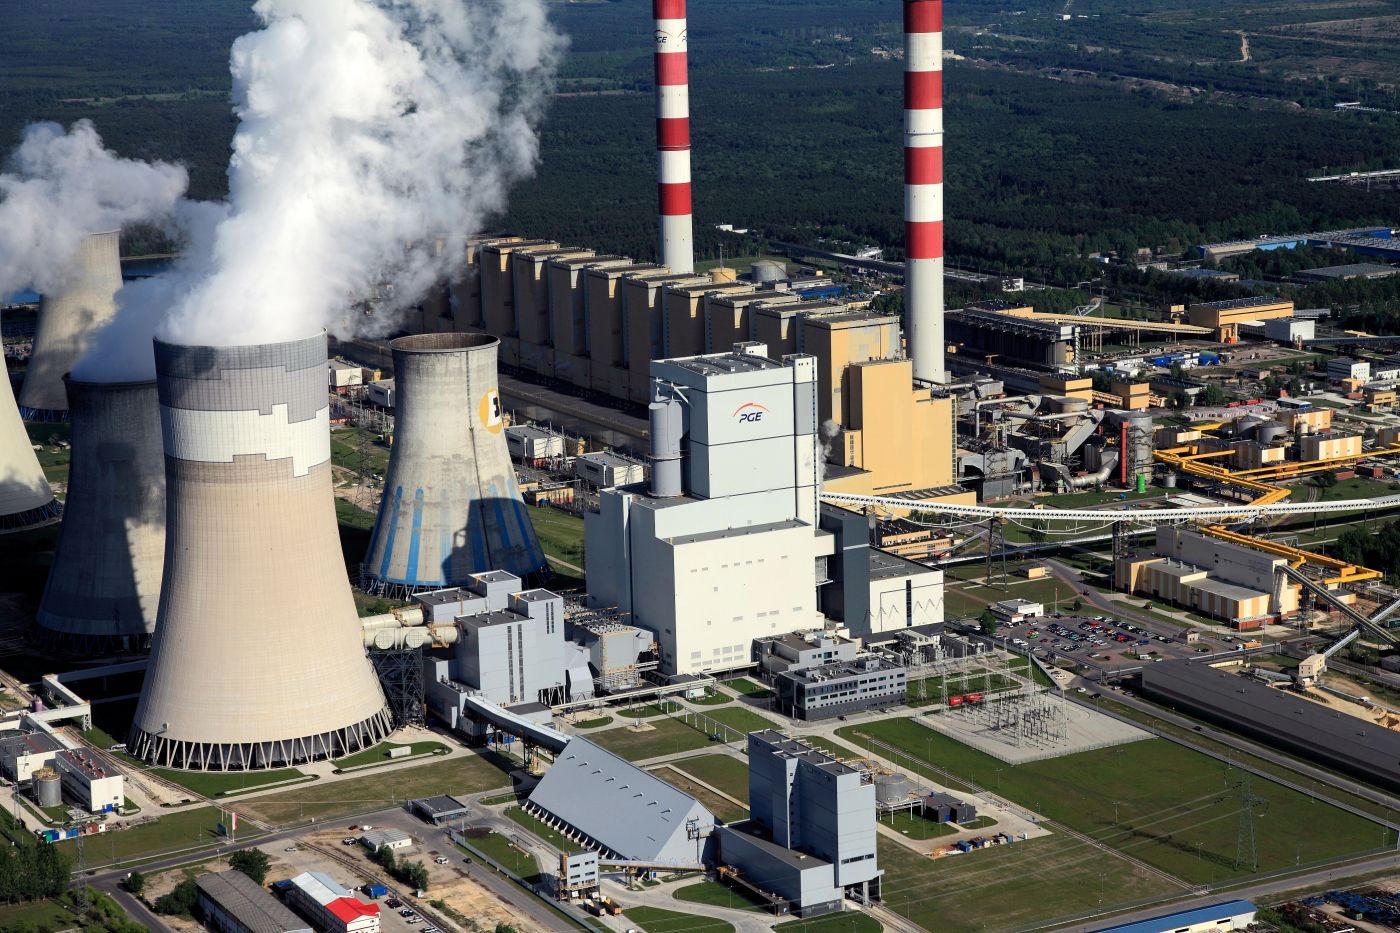 Rząd zatwierdził Politykę energetyczną Polski do 2040 roku. To nie są dobre wieści dla Bełchatowa... - Zdjęcie główne